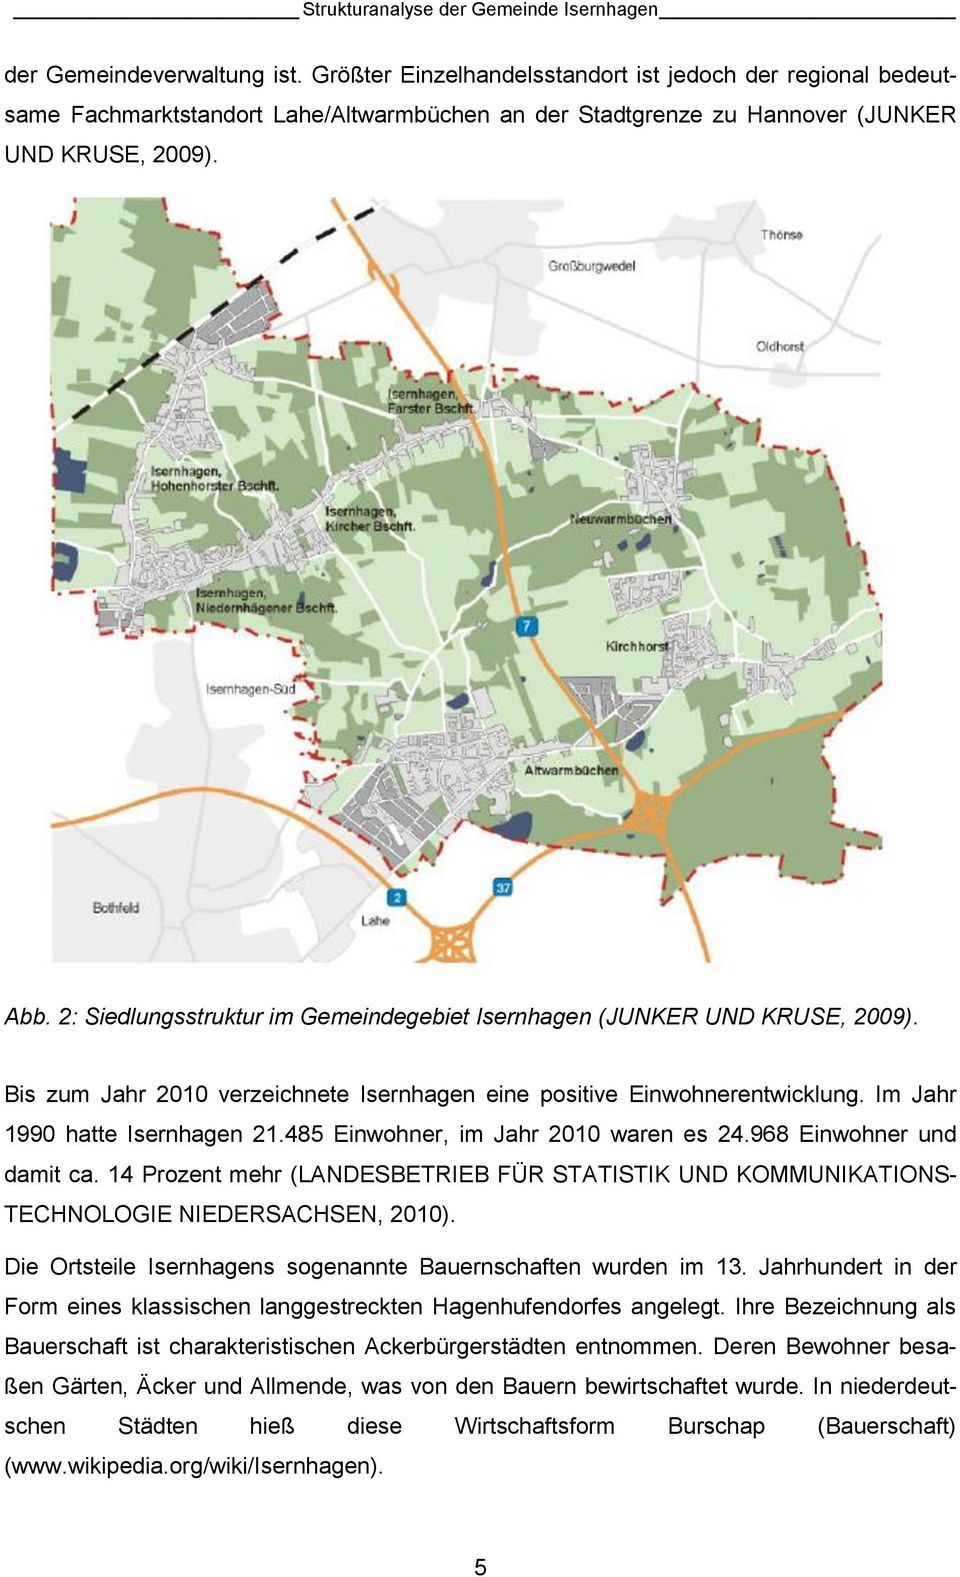 2: Siedlungsstruktur im Gemeindegebiet Isernhagen (JUNKER UND KRUSE, 2009). Bis zum Jahr 2010 verzeichnete Isernhagen eine positive Einwohnerentwicklung. Im Jahr 1990 hatte Isernhagen 21.